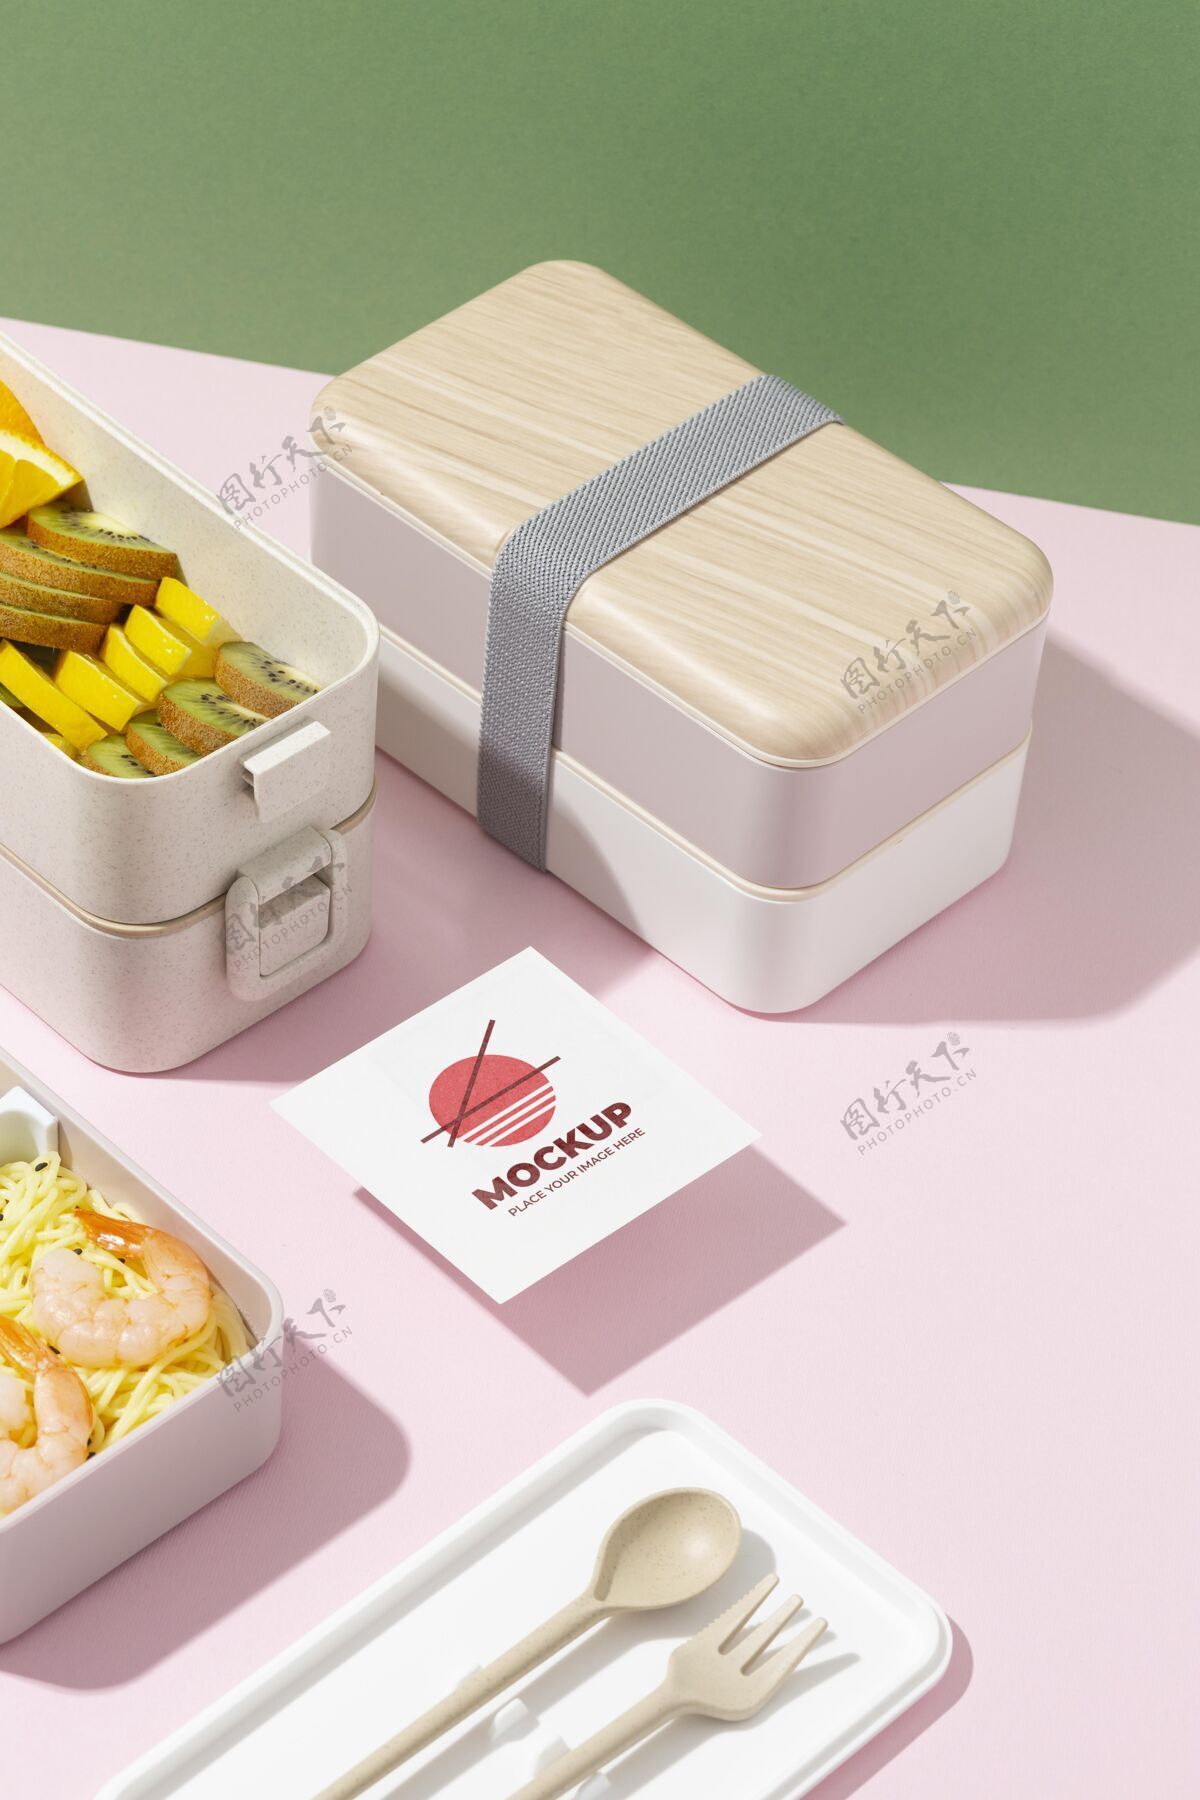 日本带模拟卡的便当盒的布置容器东方营养